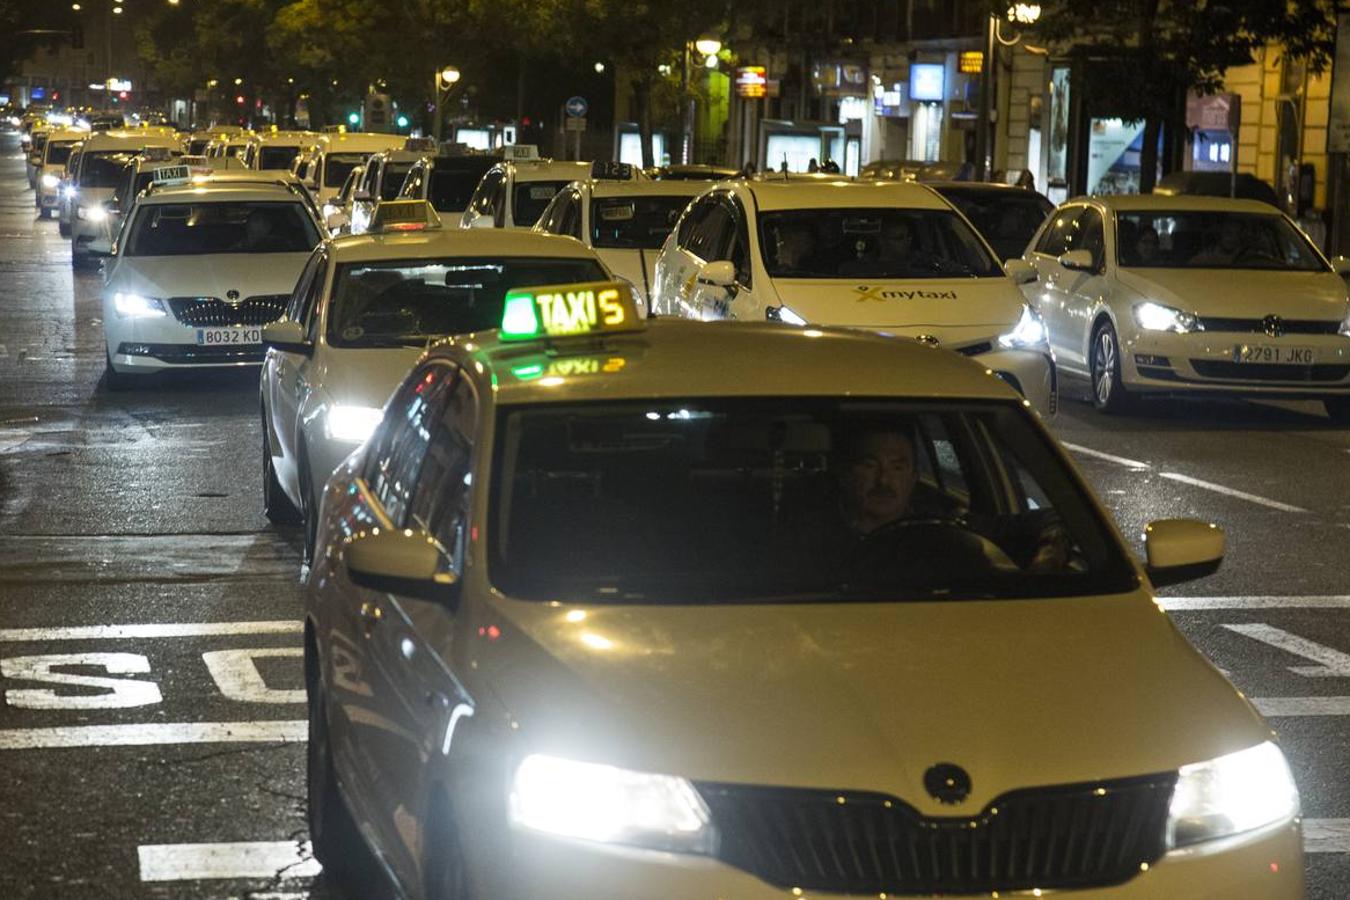 Trescientos taxis bloquean numerosas calles de Sevilla en contra de Uber y Cabify